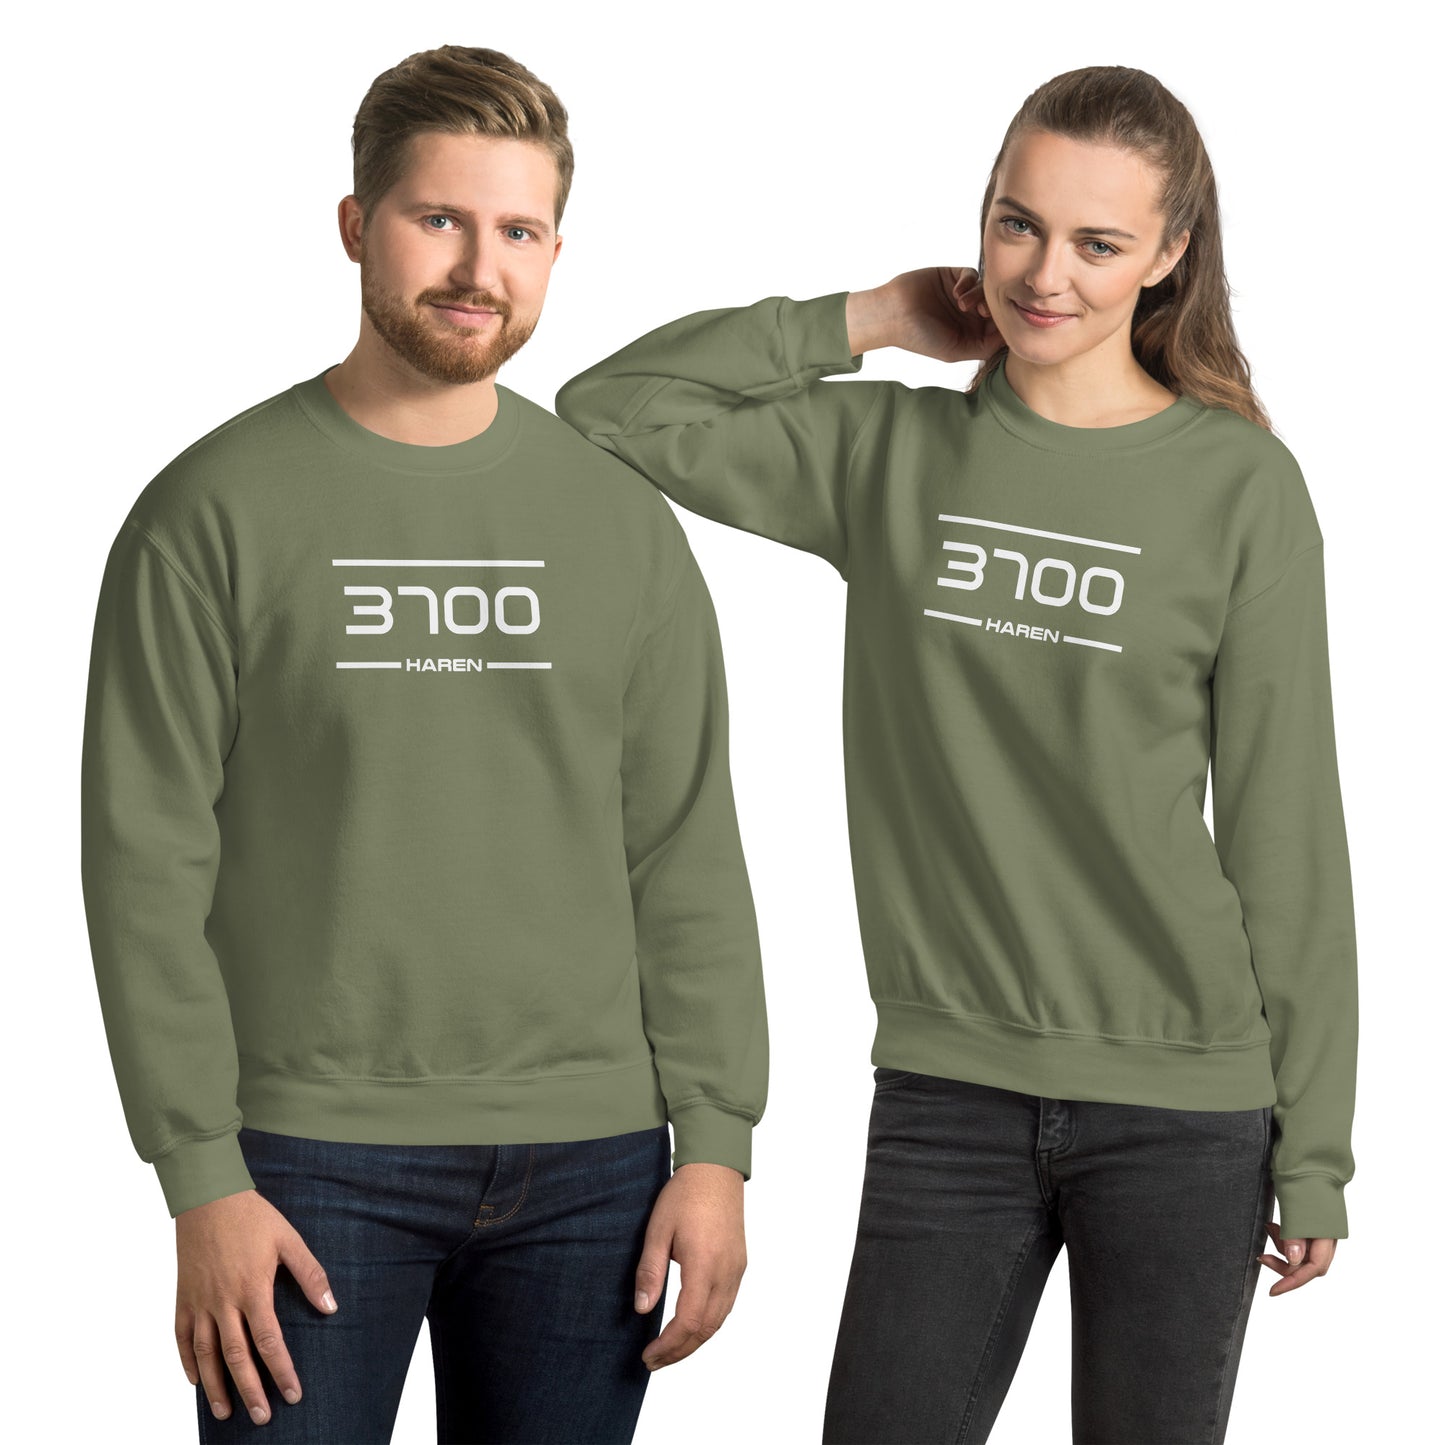 Sweater - 3700 - Haren (M/V)